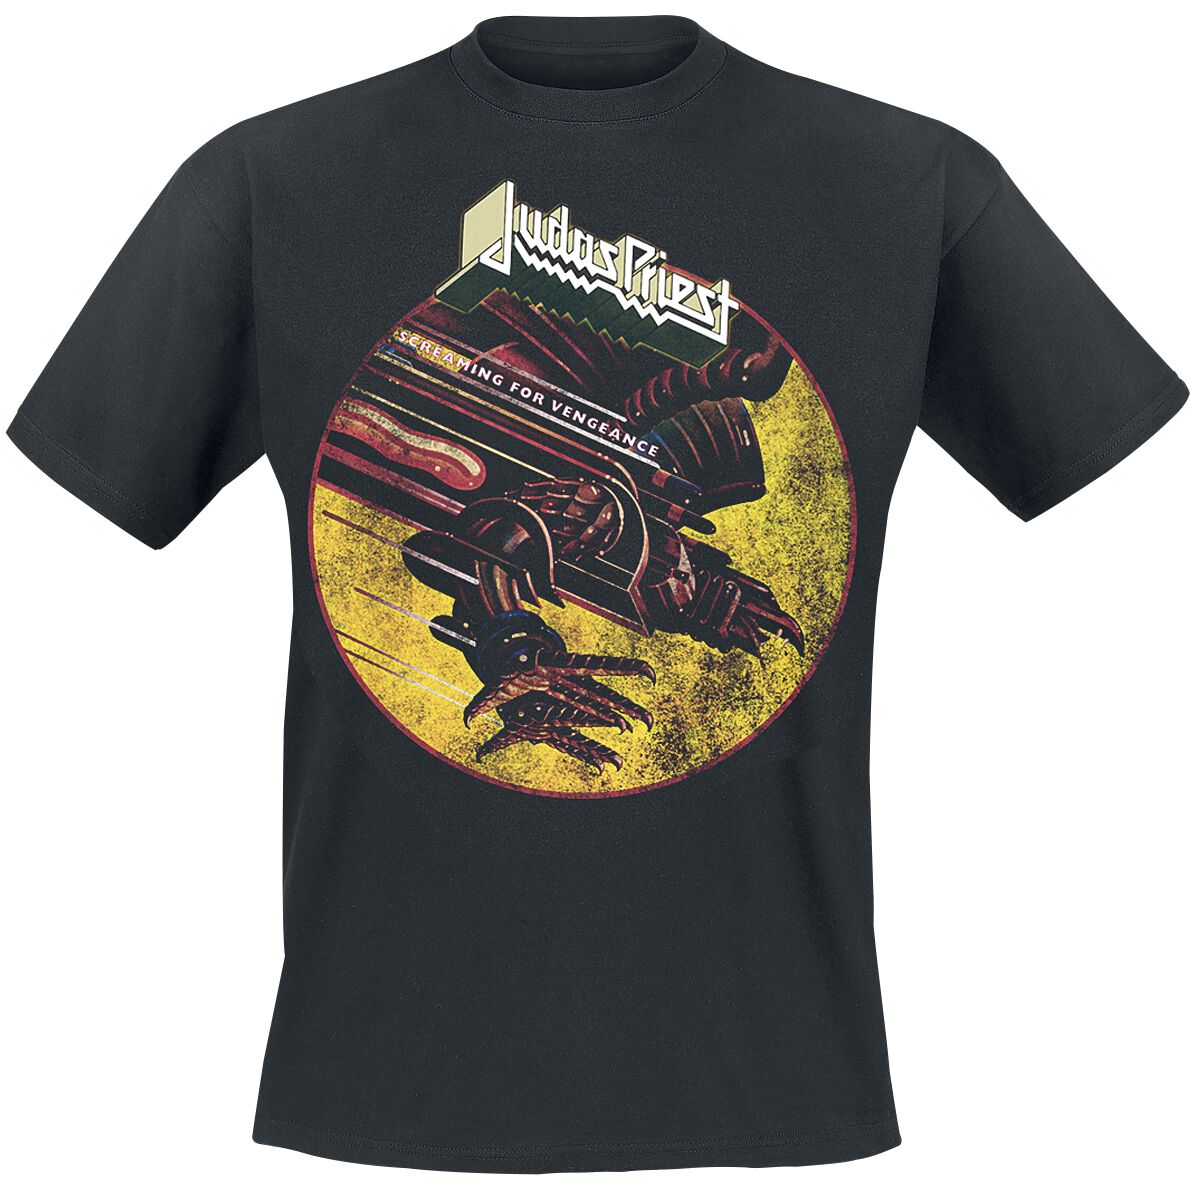 Judas Priest T-Shirt - SFV Distressed - M bis XXL - für Männer - Größe L - schwarz  - Lizenziertes Merchandise!